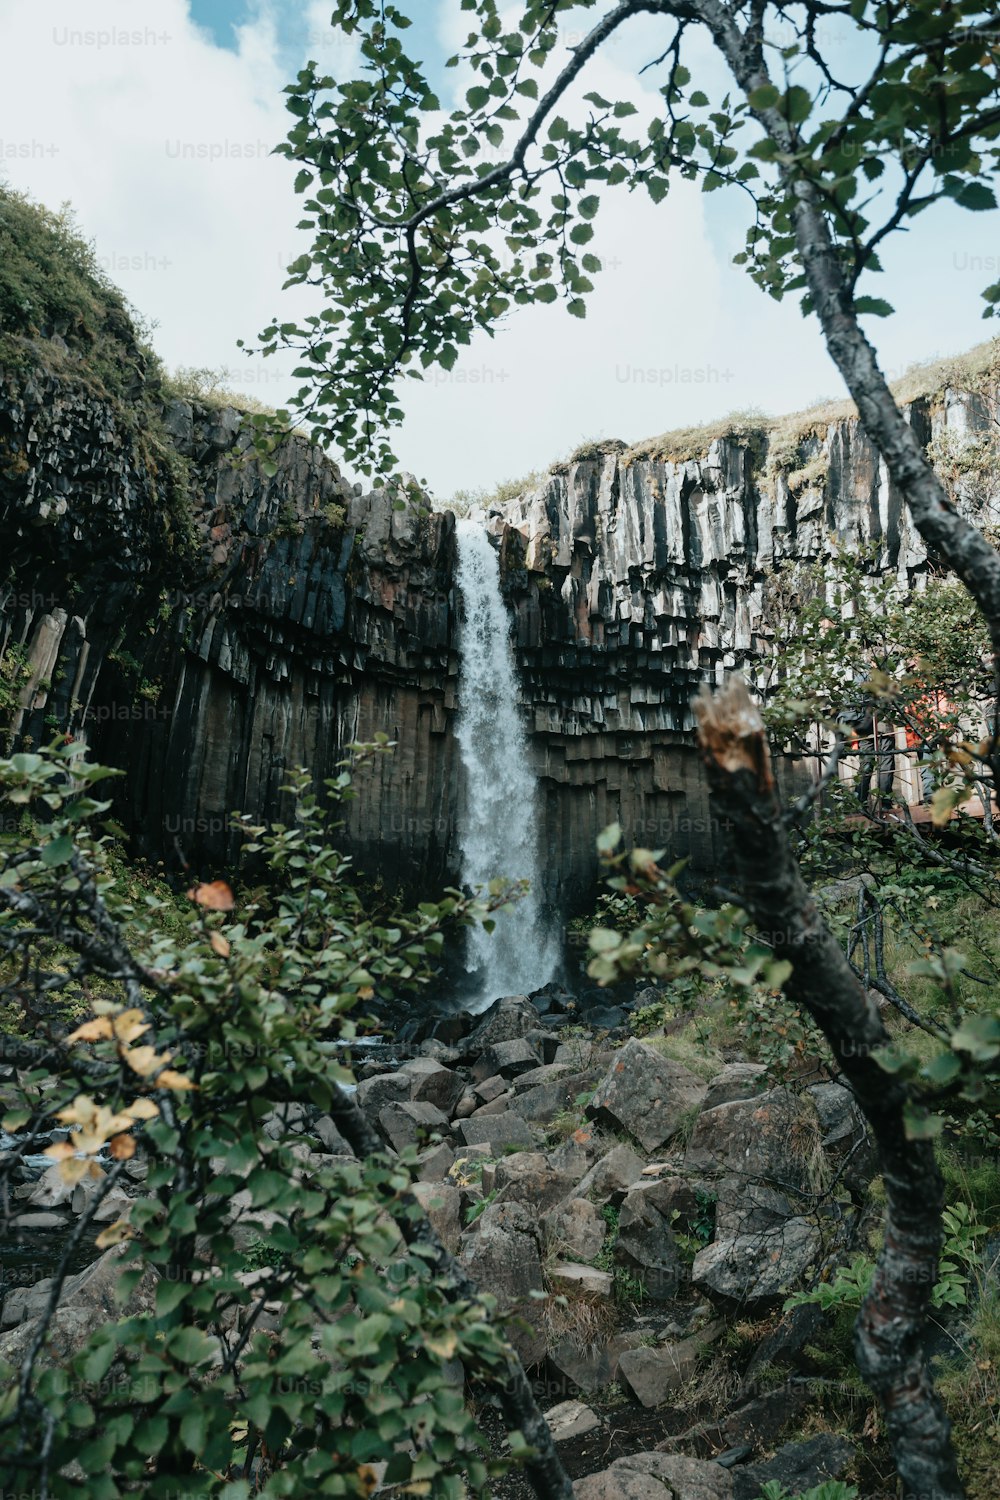 Una piccola cascata nel mezzo di una foresta